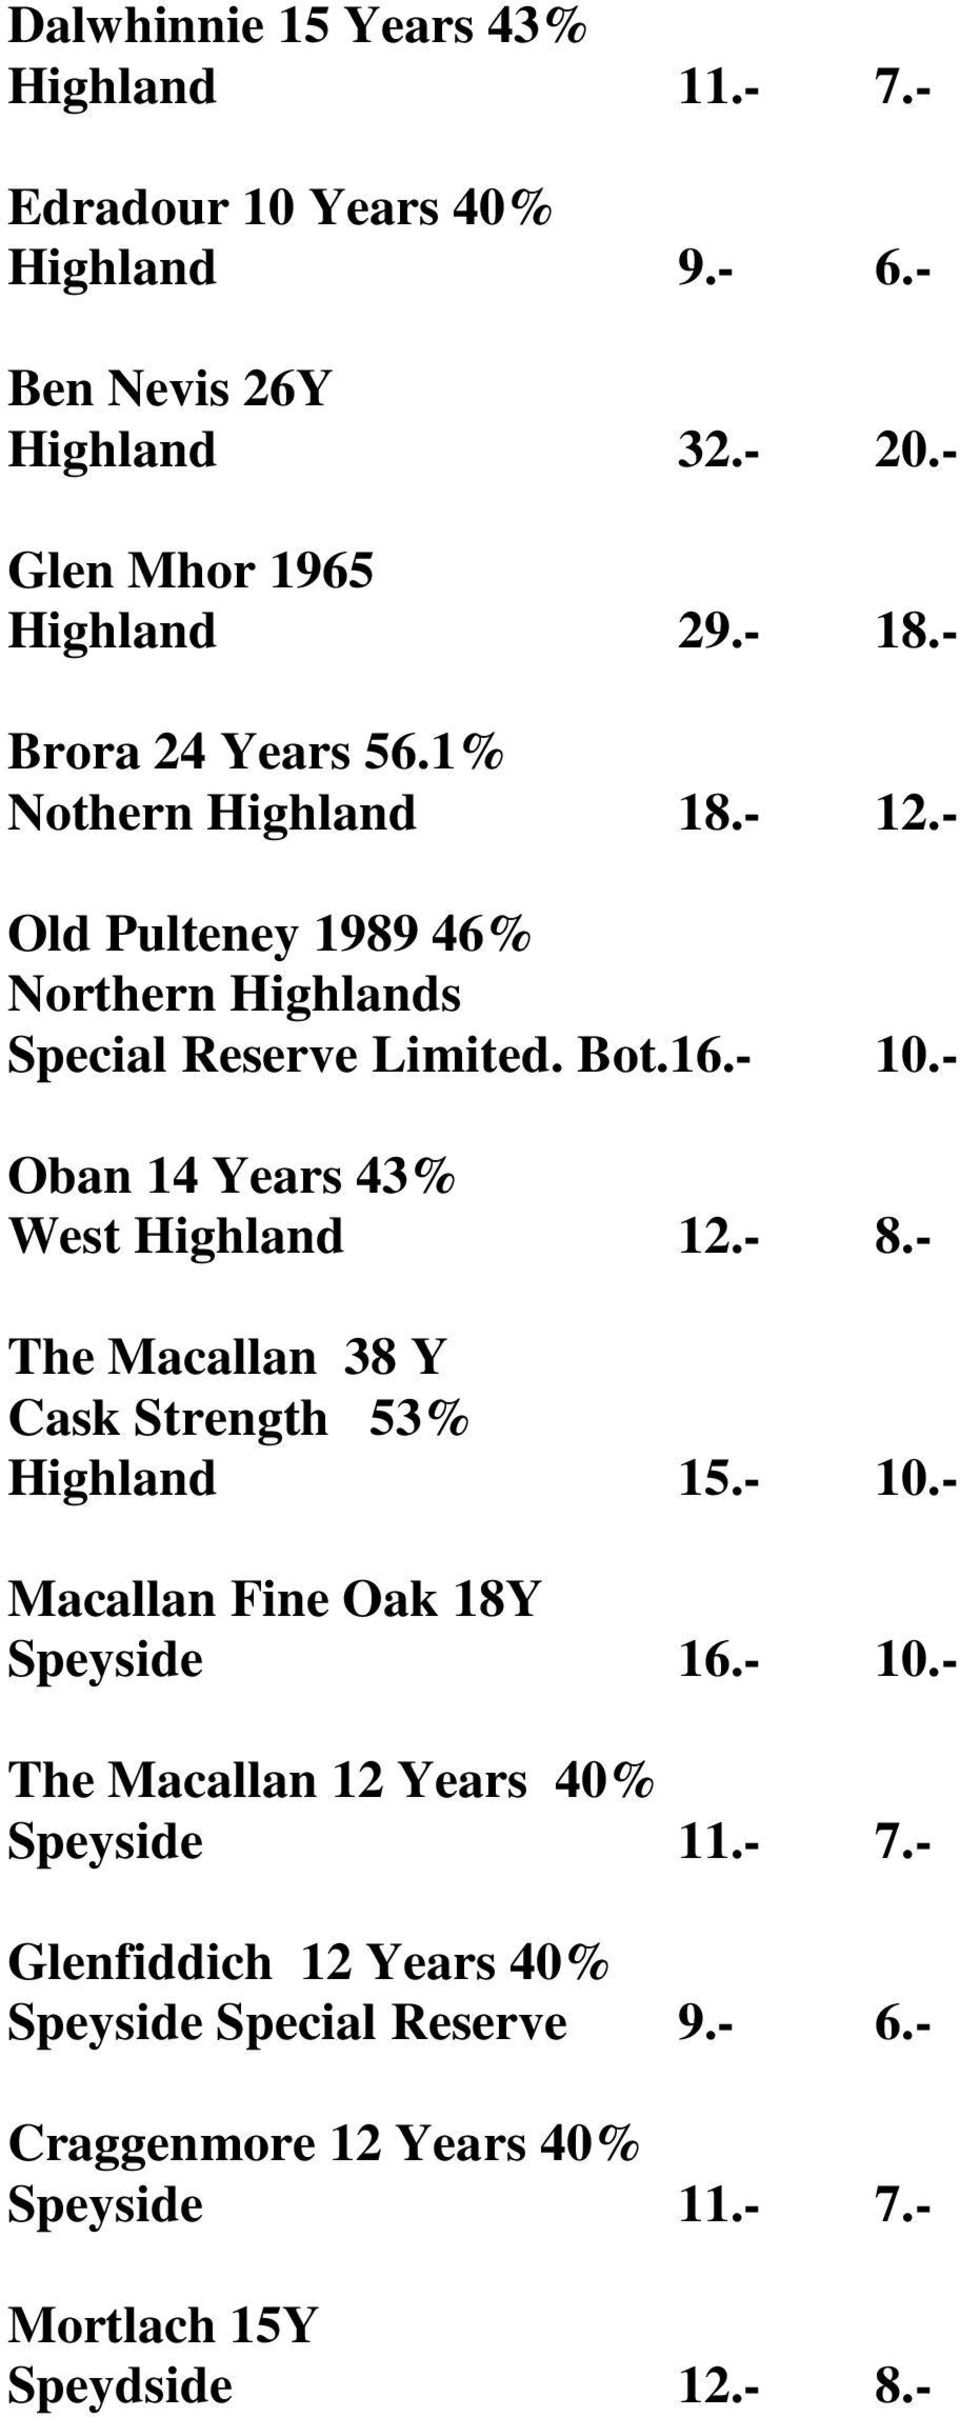 - Oban 14 Years 43% West Highland 12.- 8.- The Macallan 38 Y Cask Strength 53% Highland 15.- 10.- Macallan Fine Oak 18Y Speyside 16.- 10.- The Macallan 12 Years 40% Speyside 11.